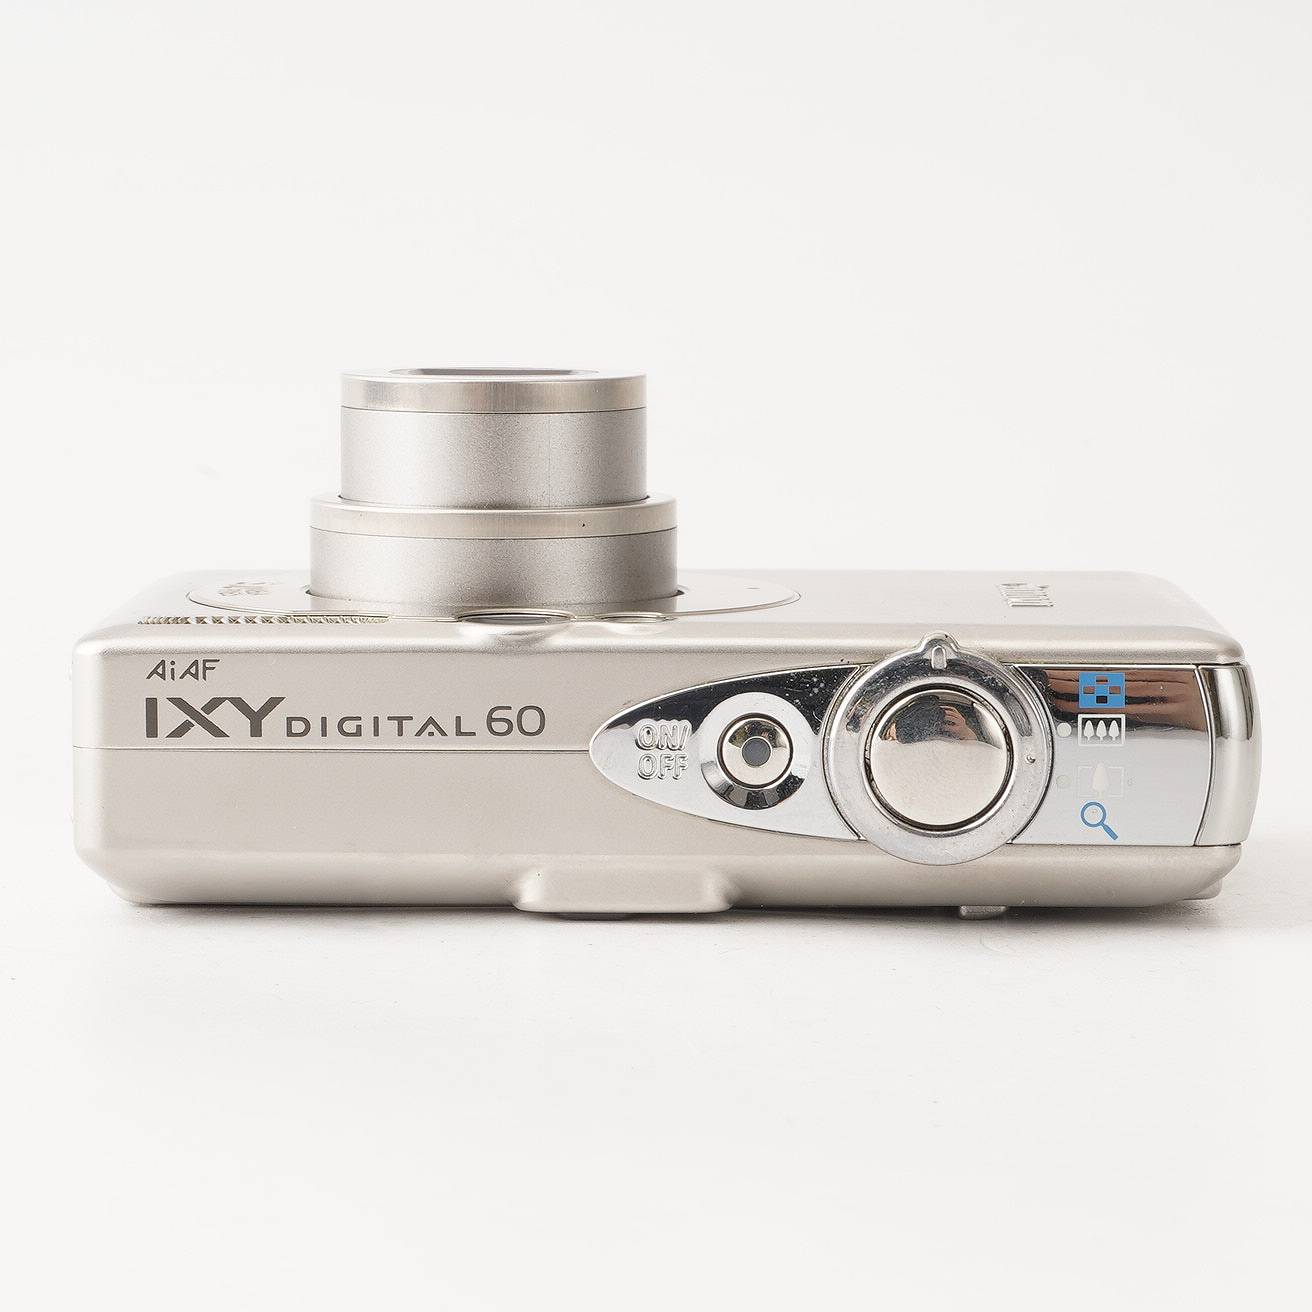 キヤノン Canon IXY DIGITAL 60 / ZOOM 3X 5.8-17.4mm F2.8-4.9 – Natural Camera /  ナチュラルカメラ